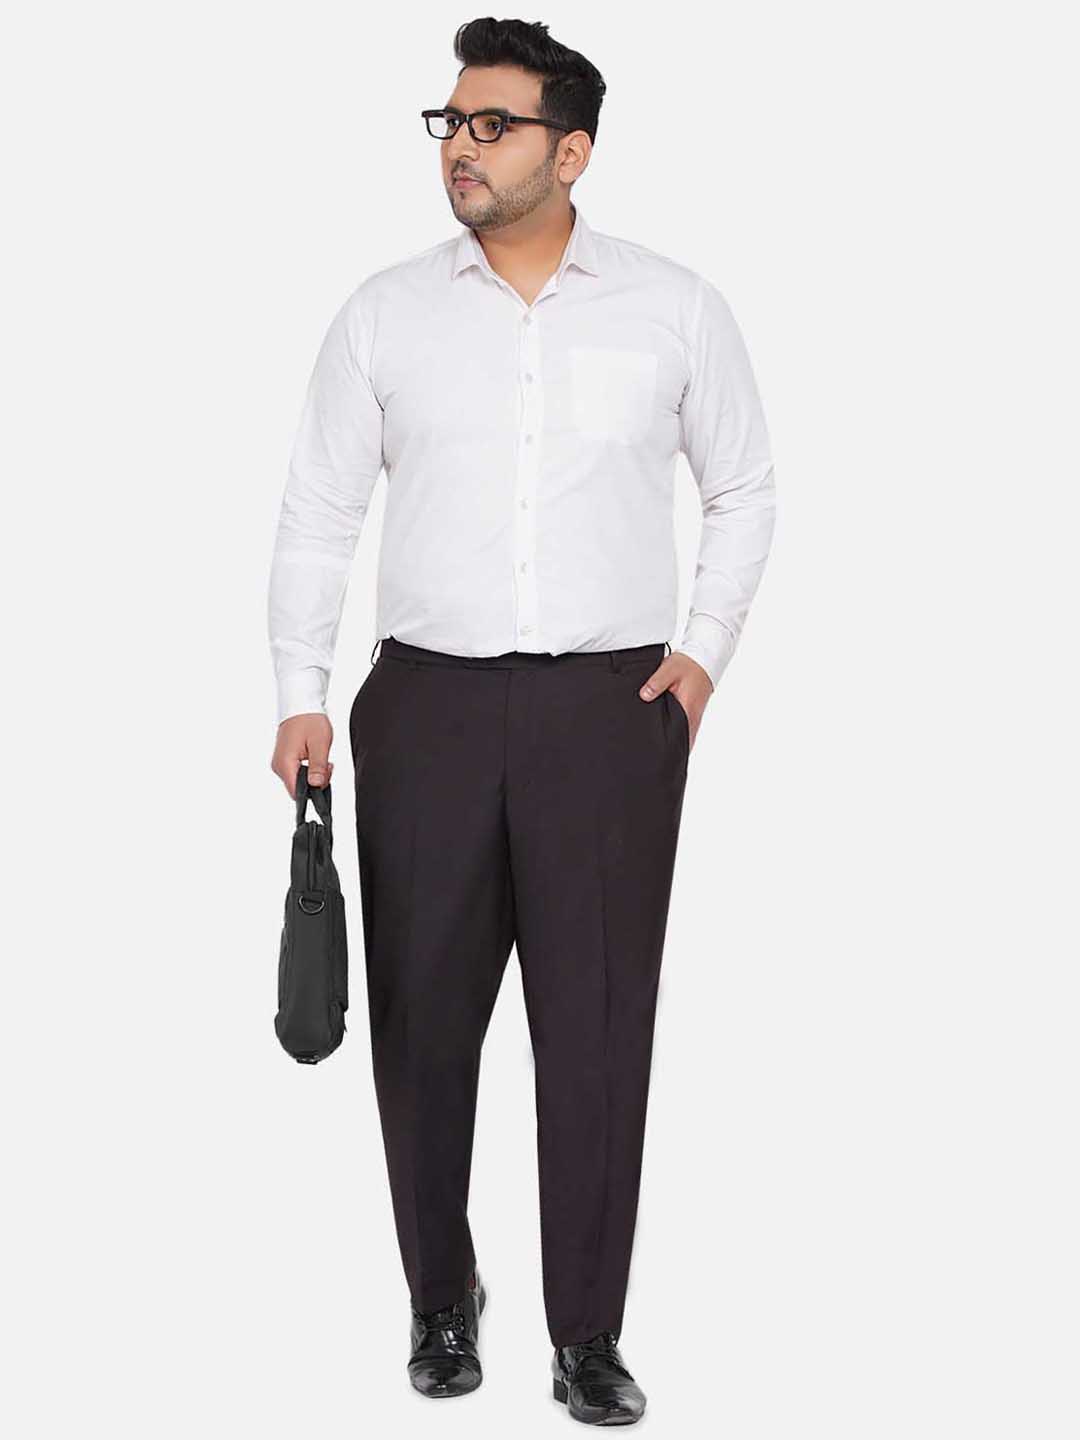 bottomwear/trousers/JPTR22010E/jptr22010e-2.jpg